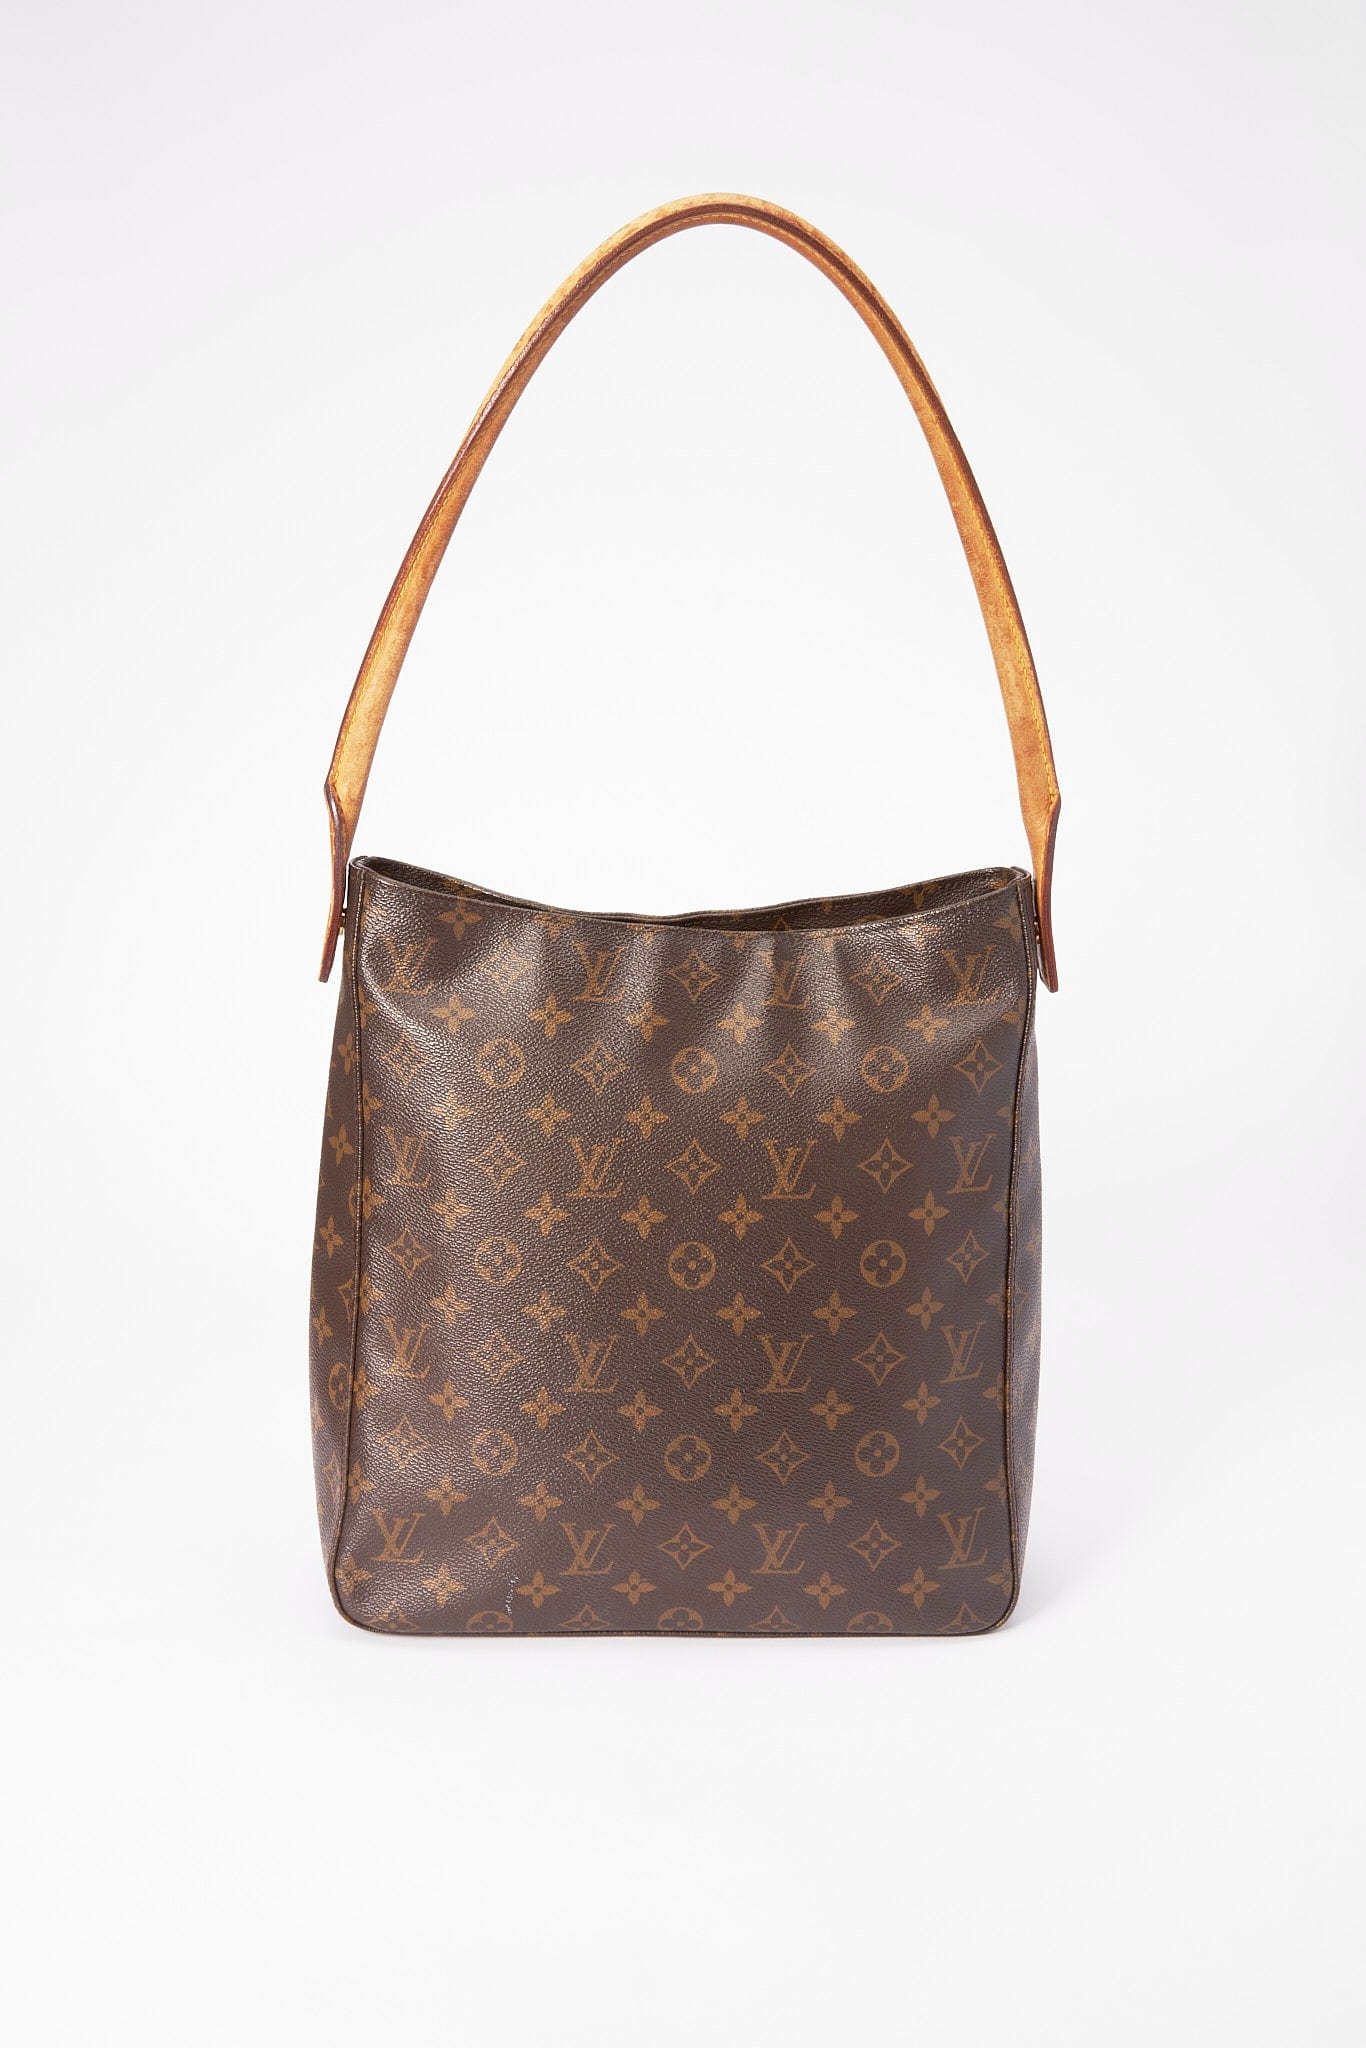 Louis Vuitton 'looping' Monogram Handbag